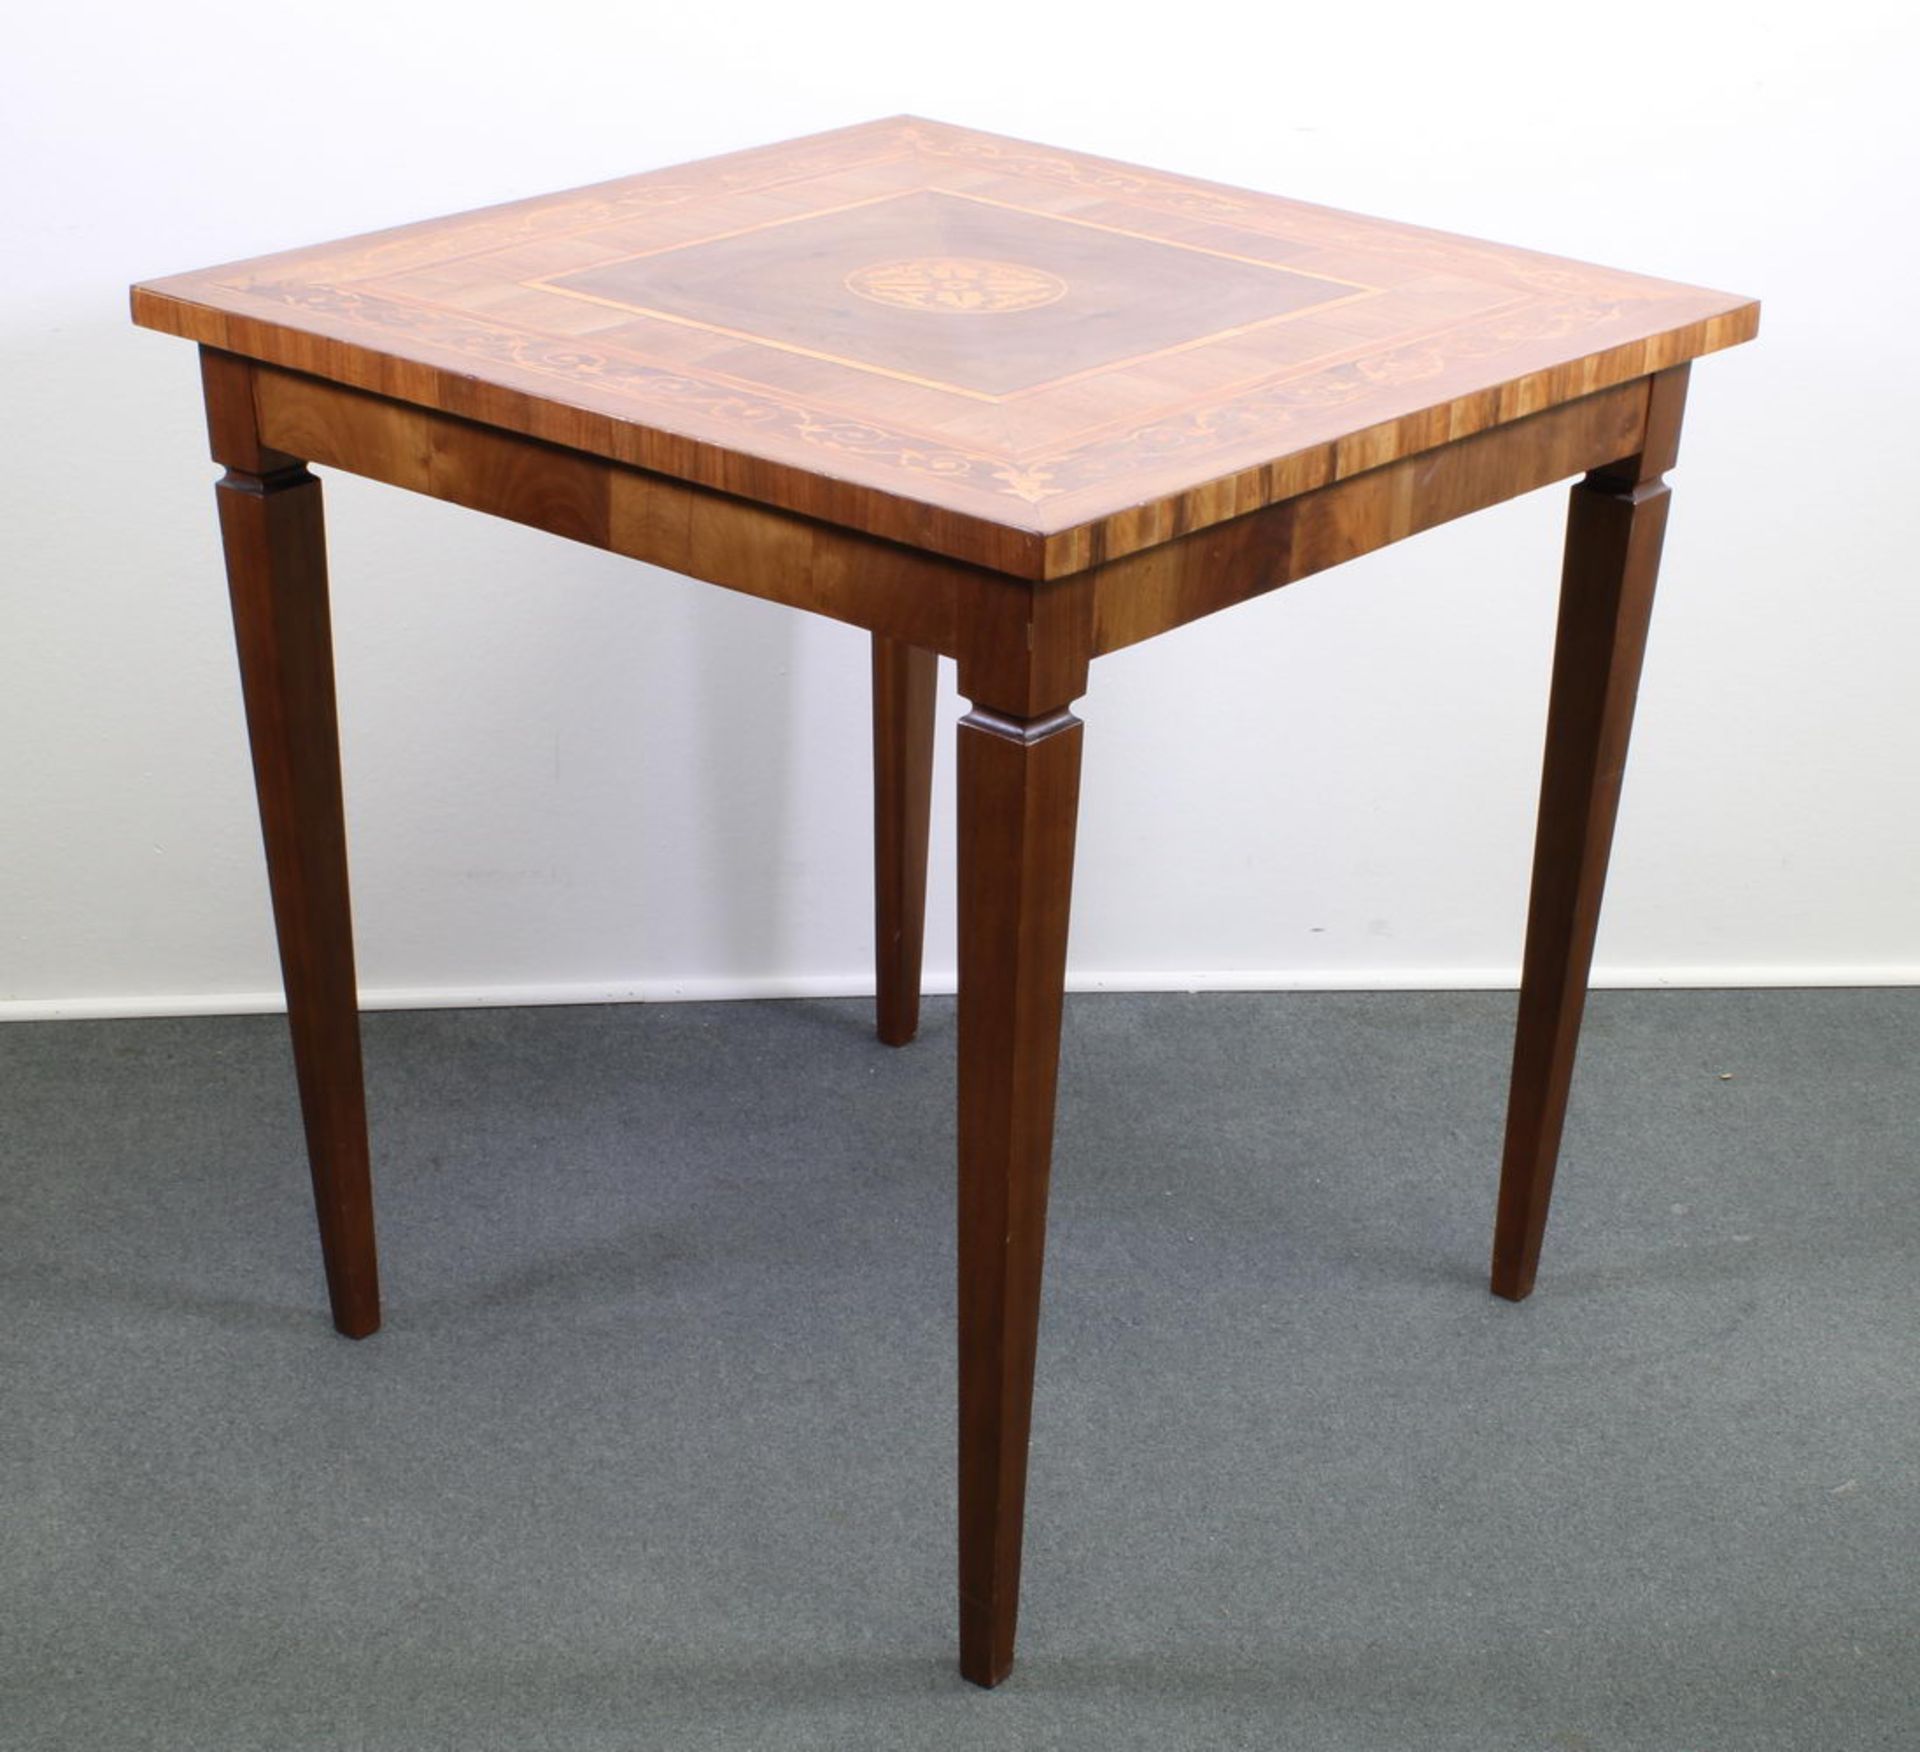 Tisch, Italien, 20. Jh., Nussbaum, Intarsienhölzer, unter Verwendung einer alten Platte, 76.5 x 75 - Image 2 of 2